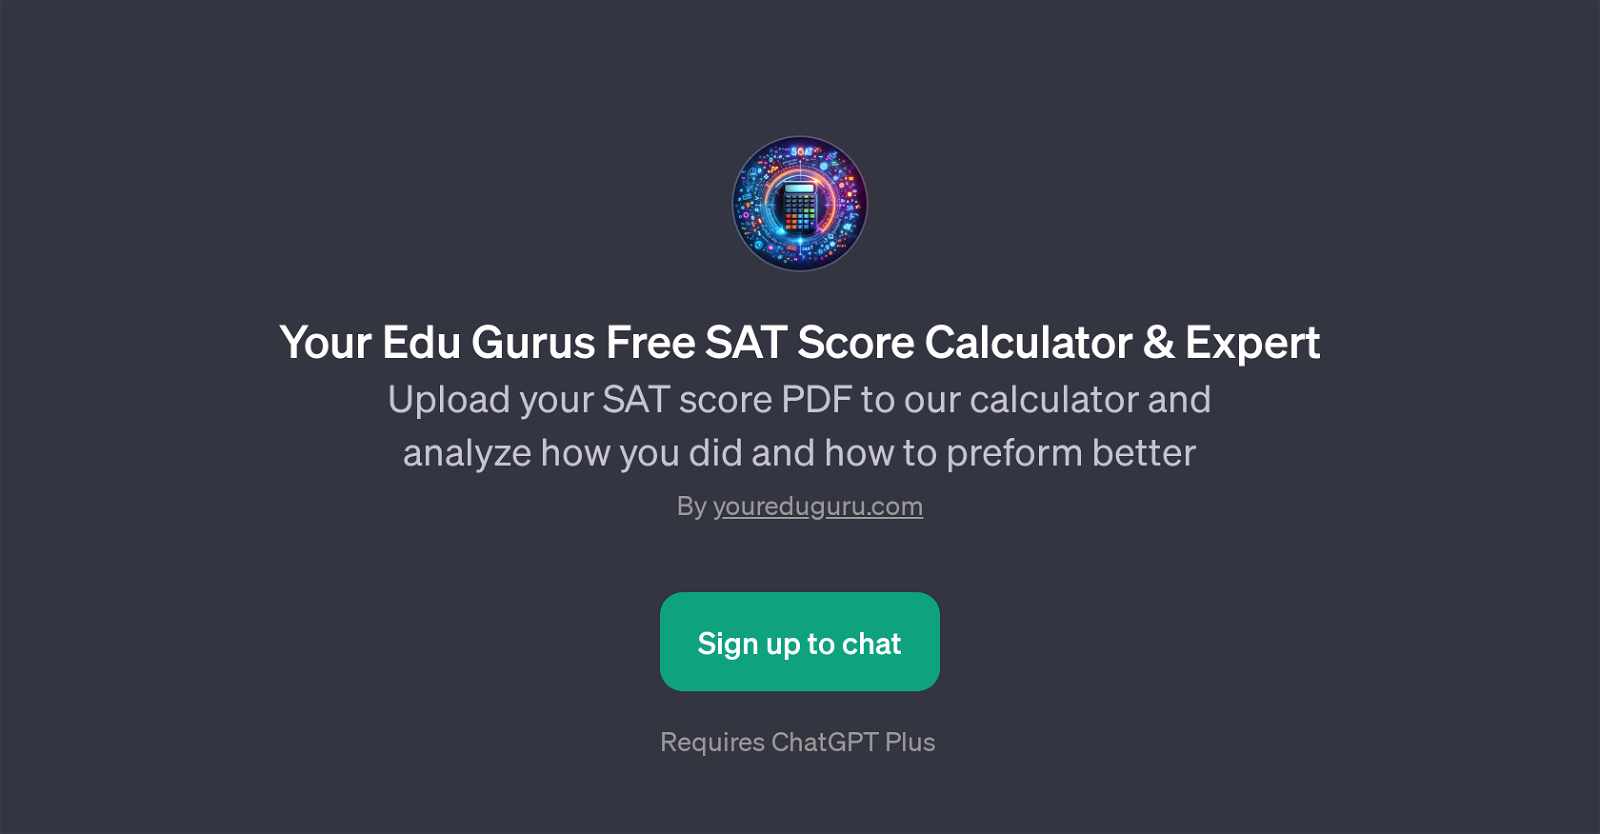 Your Edu Gurus Free SAT Score Calculator & Expert website